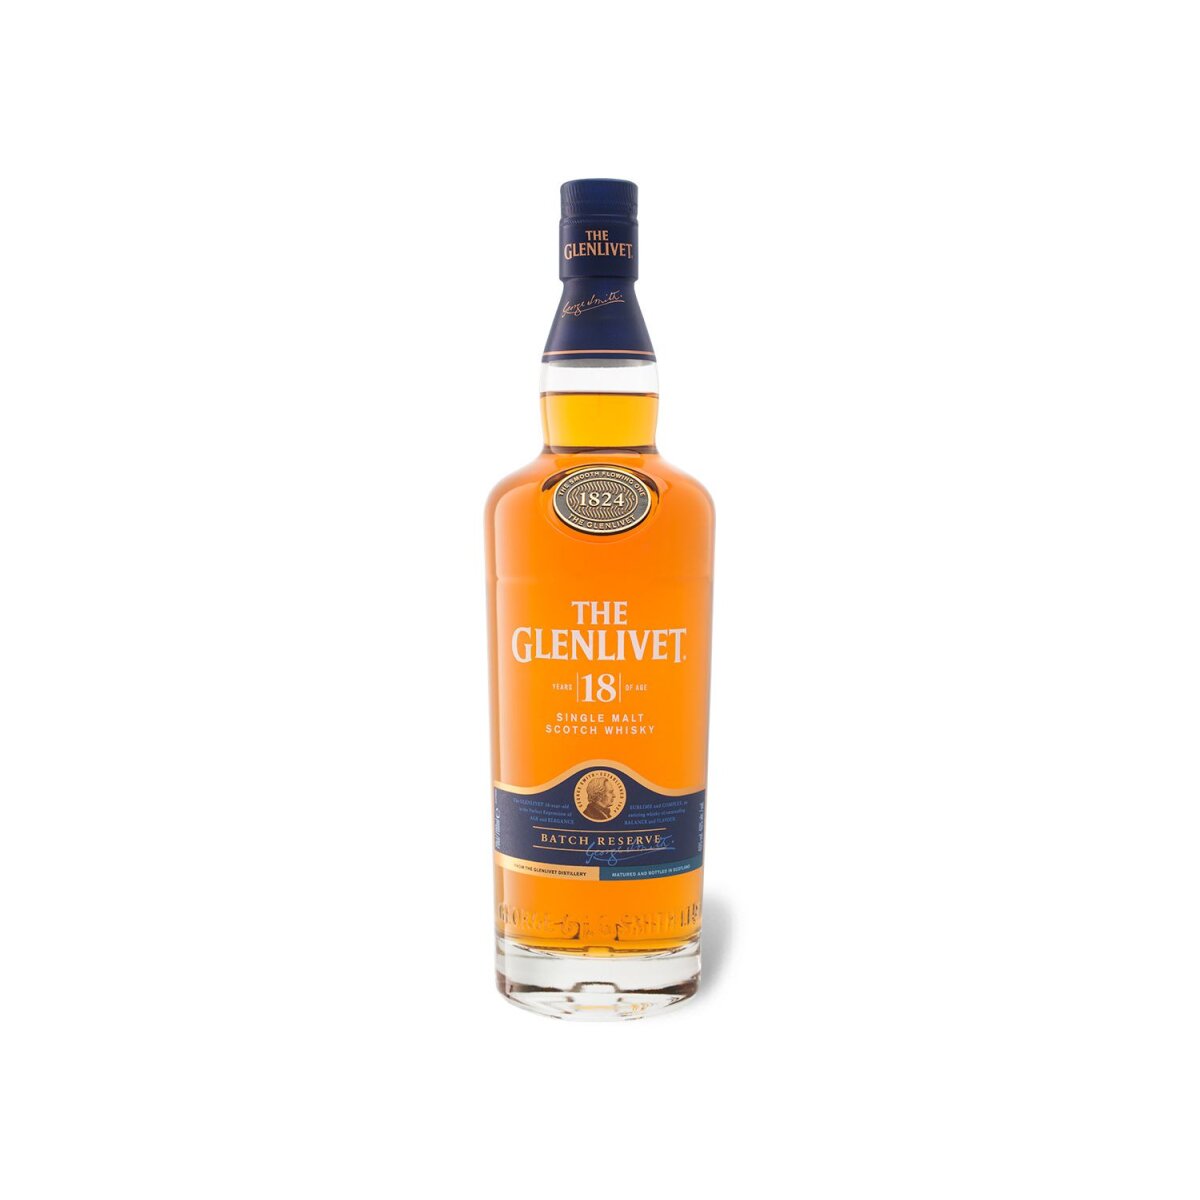 The Glenlivet Speyside Single Malt 18 Geschenkbox € Whisky mit Jahre 55,99 40% Vol, Scotch